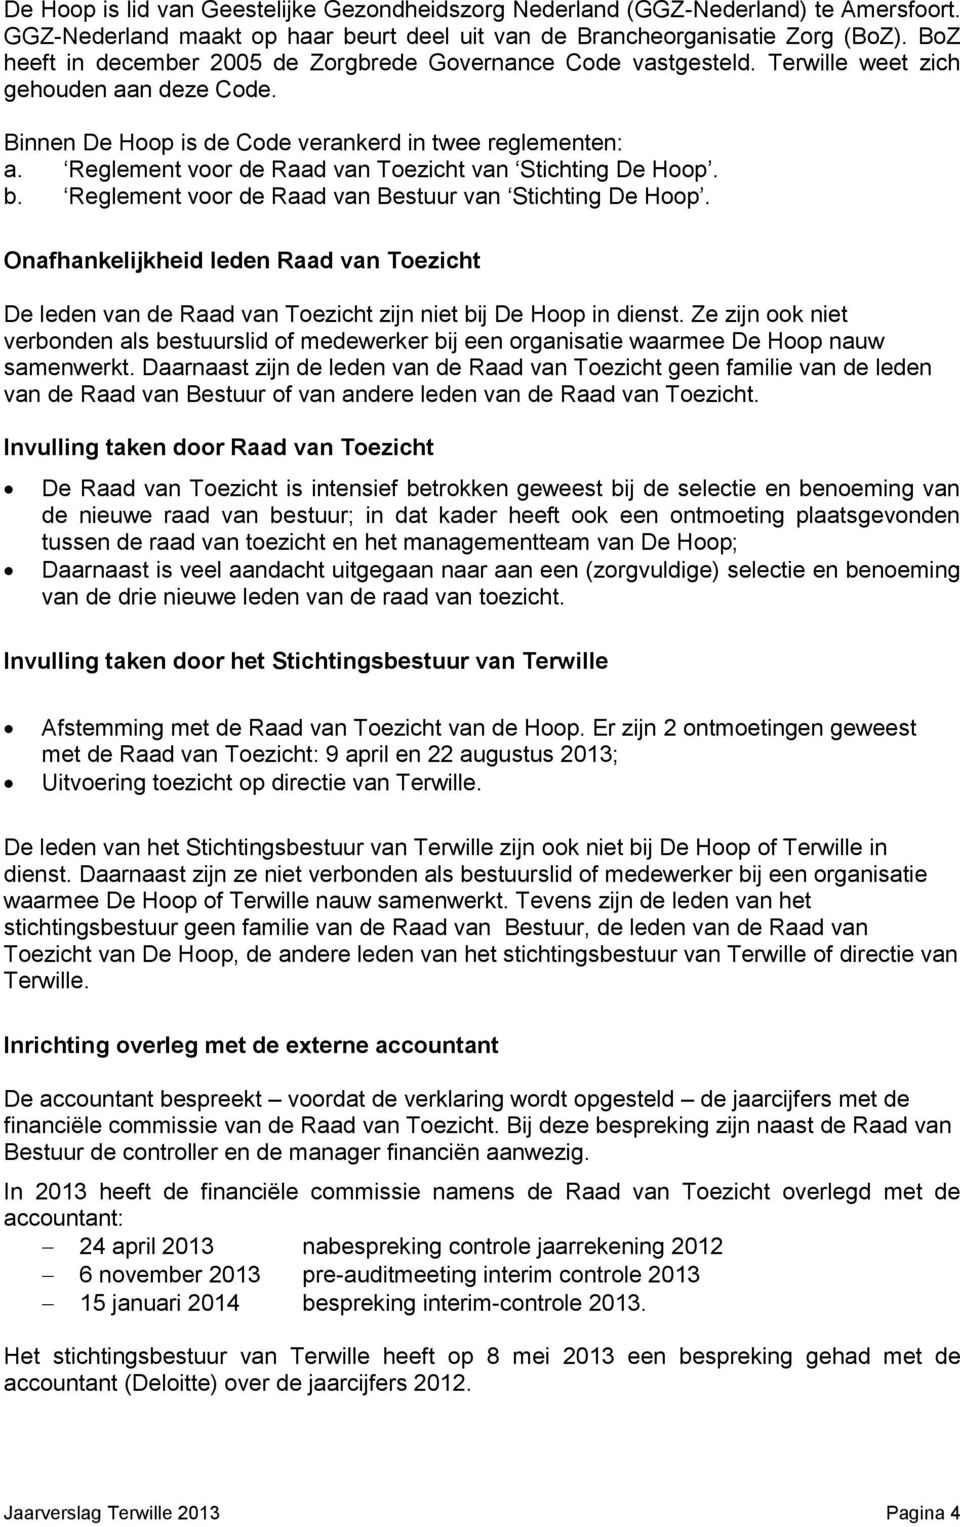 Reglement voor de Raad van Toezicht van Stichting De Hoop. b. Reglement voor de Raad van Bestuur van Stichting De Hoop.